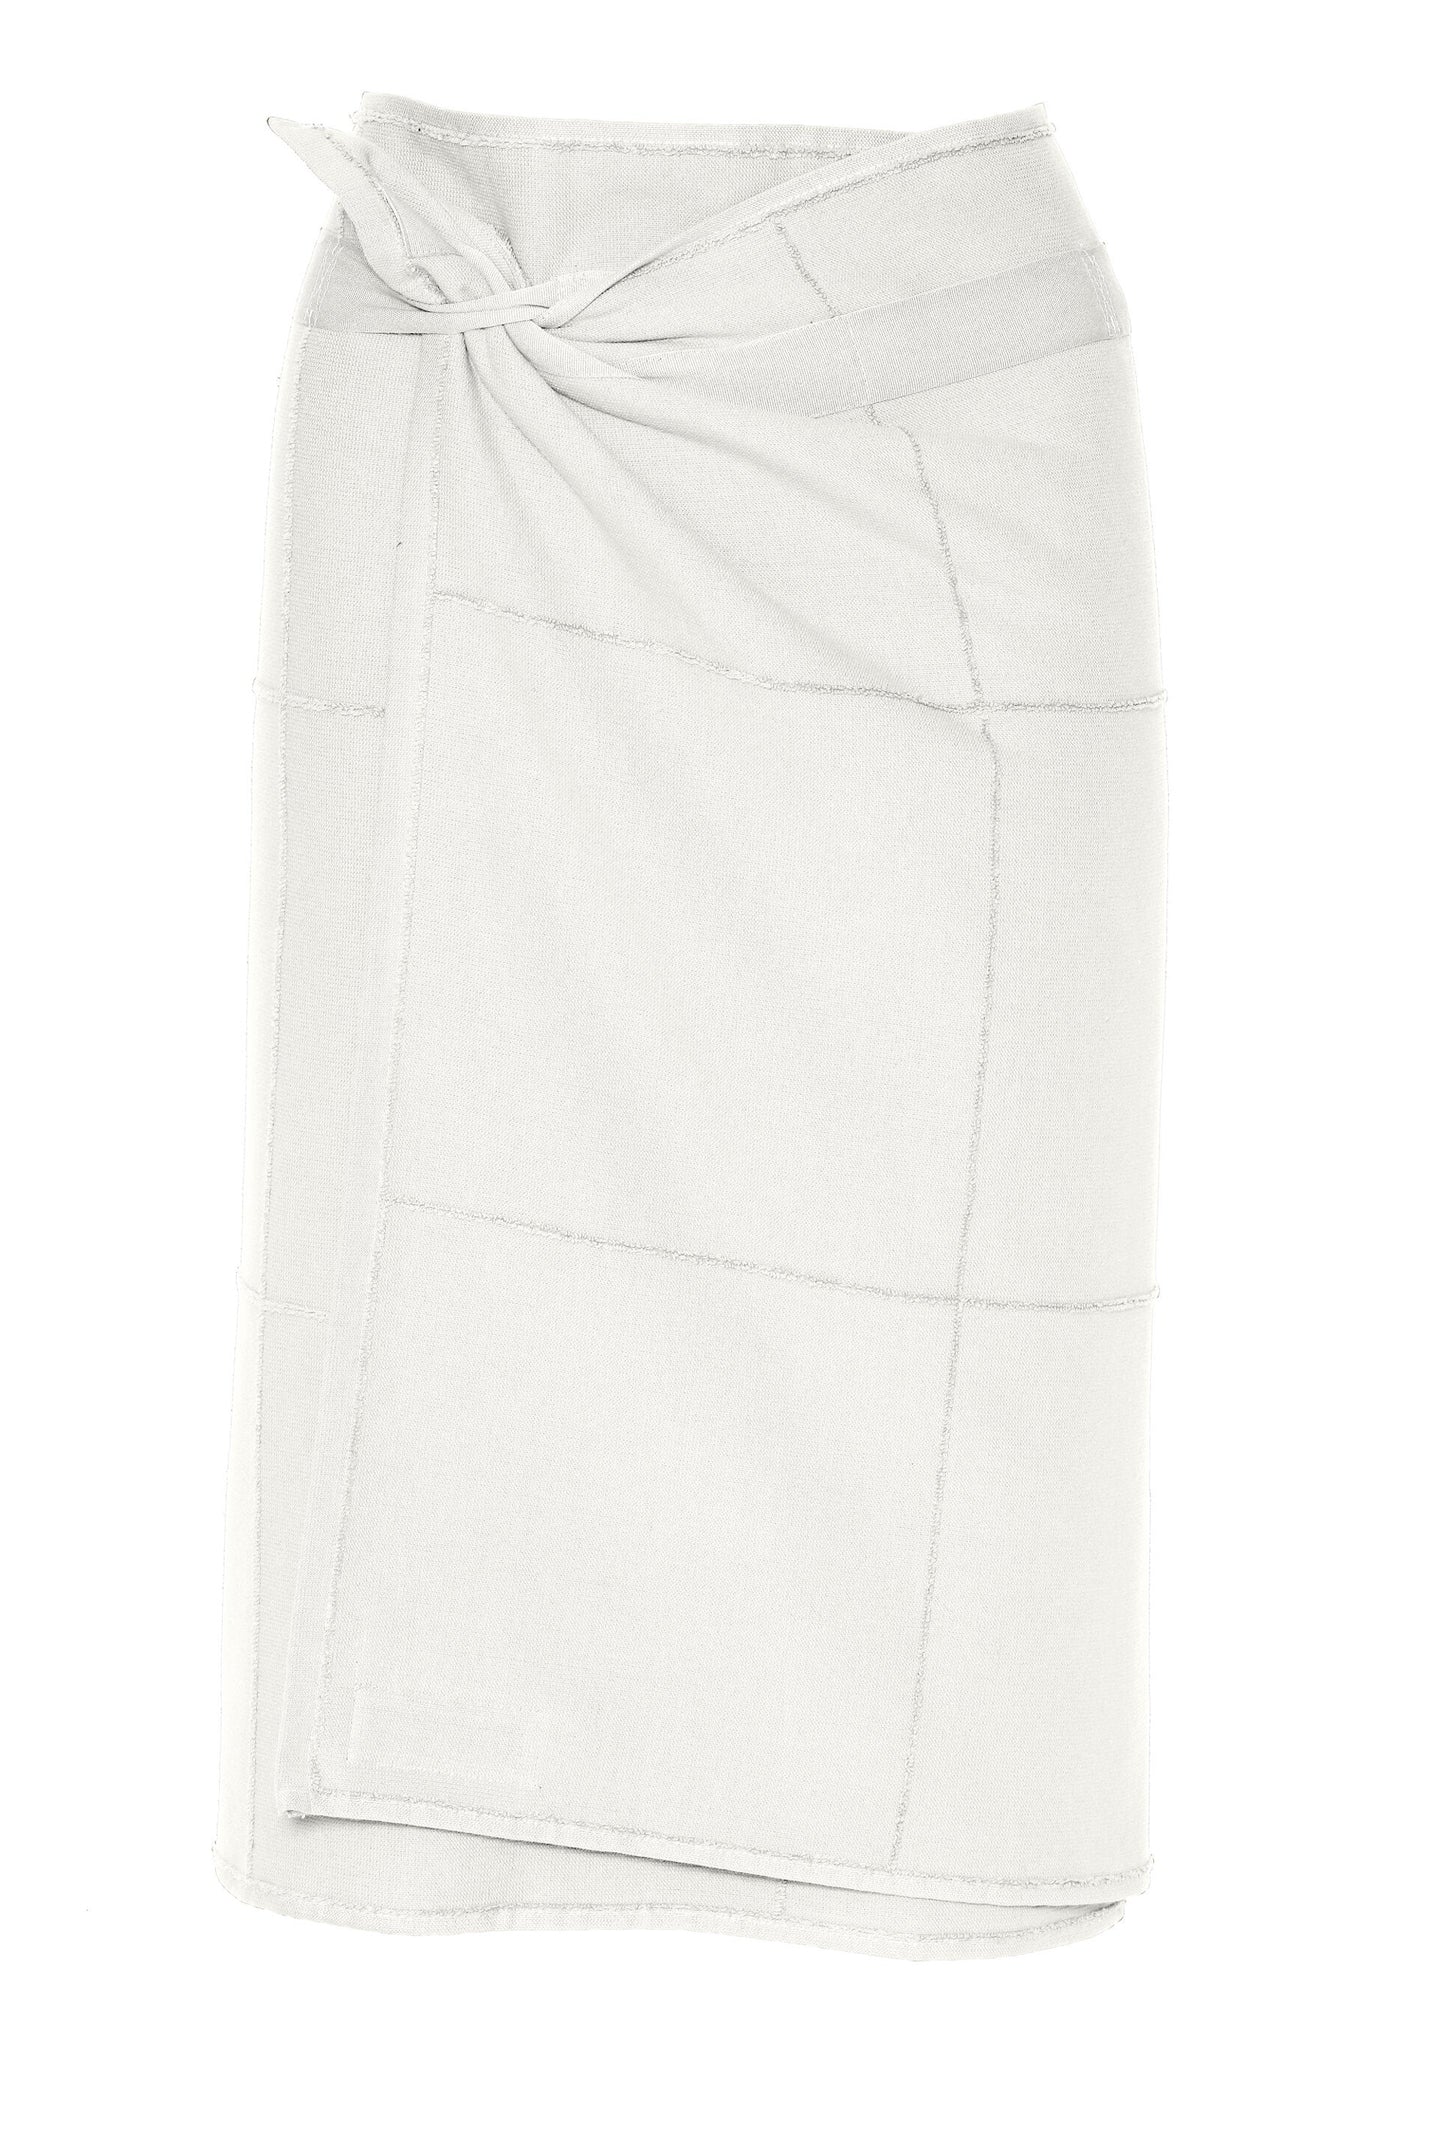 Calm Towel To wrap - White (70x160)